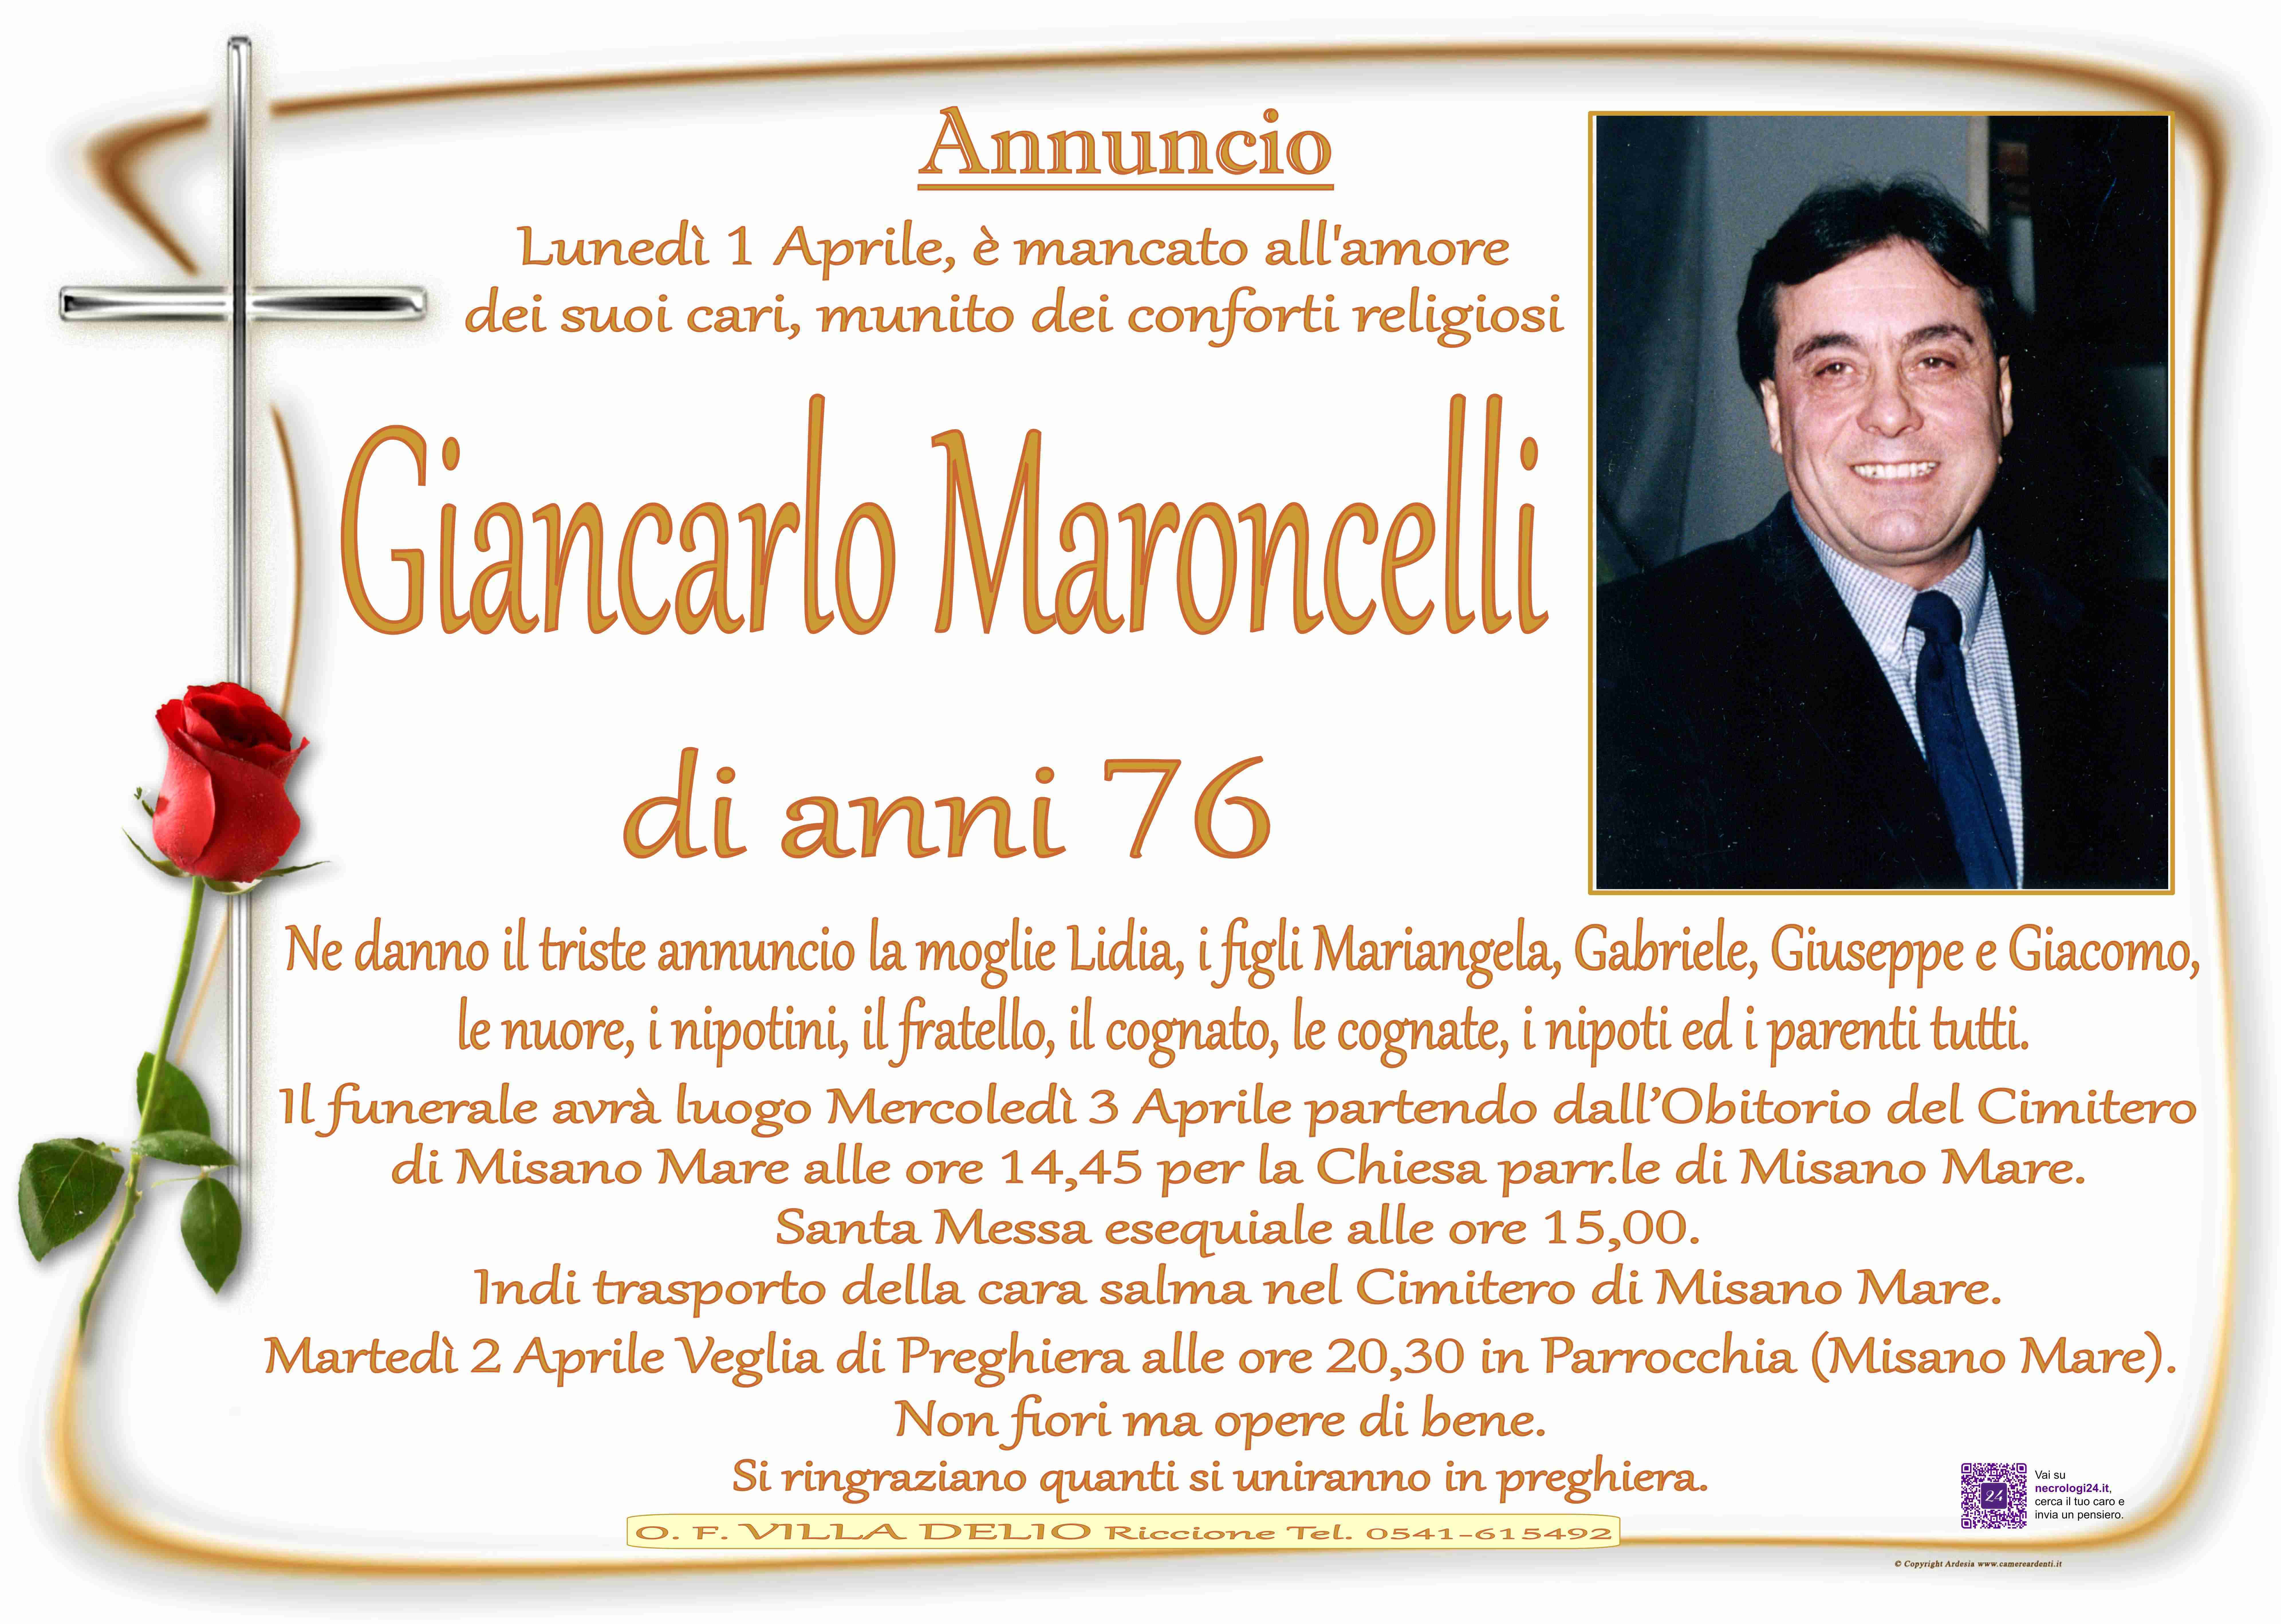 Giancarlo Maroncelli